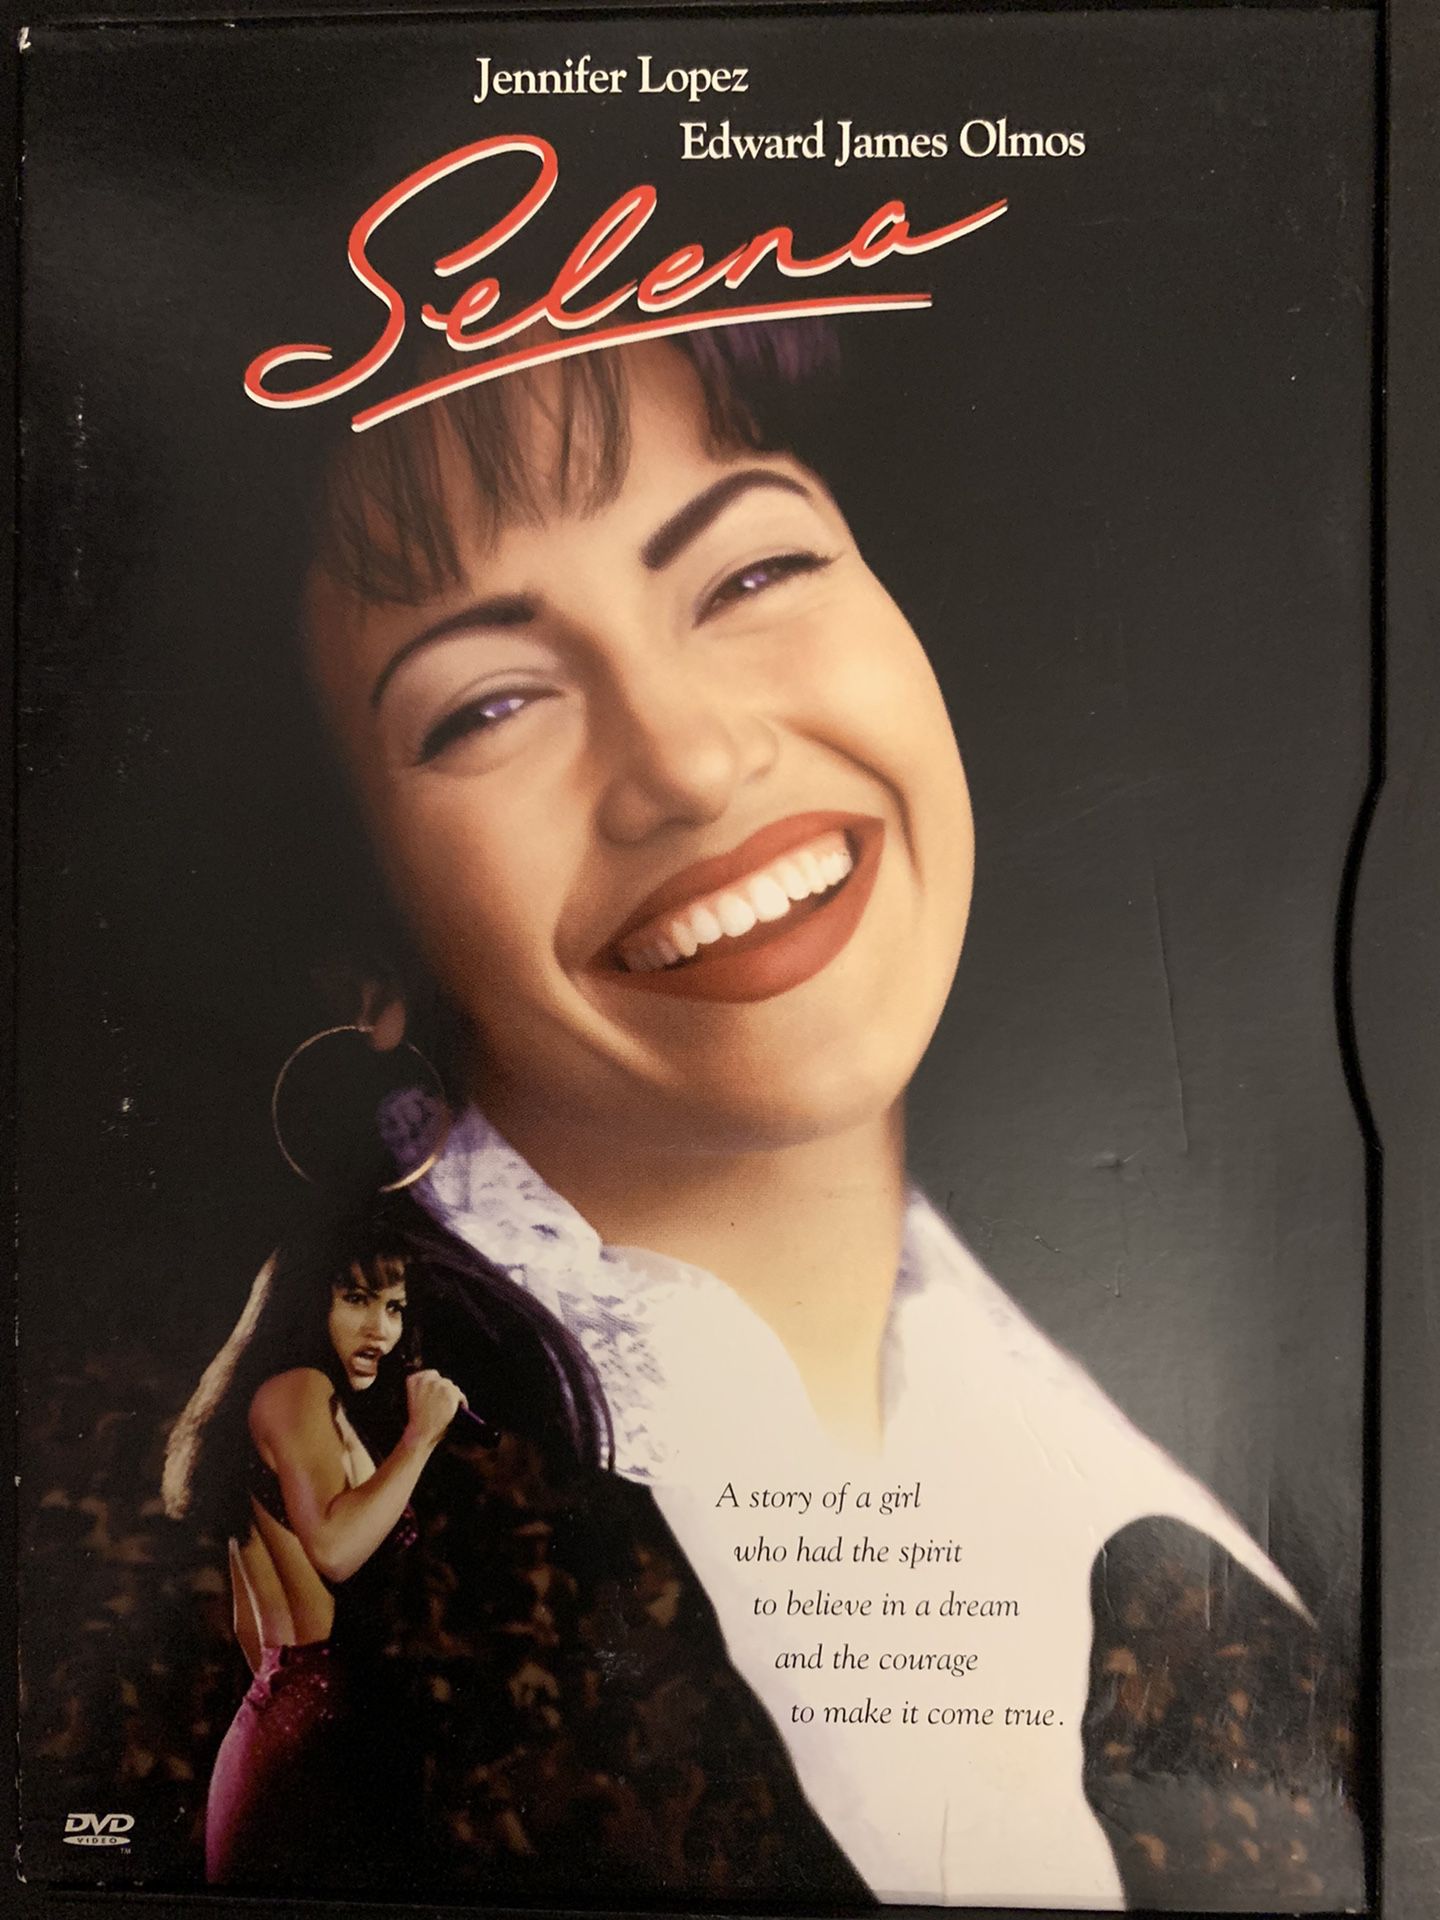 SELENA (DVD-1997) Jennifer Lopez!